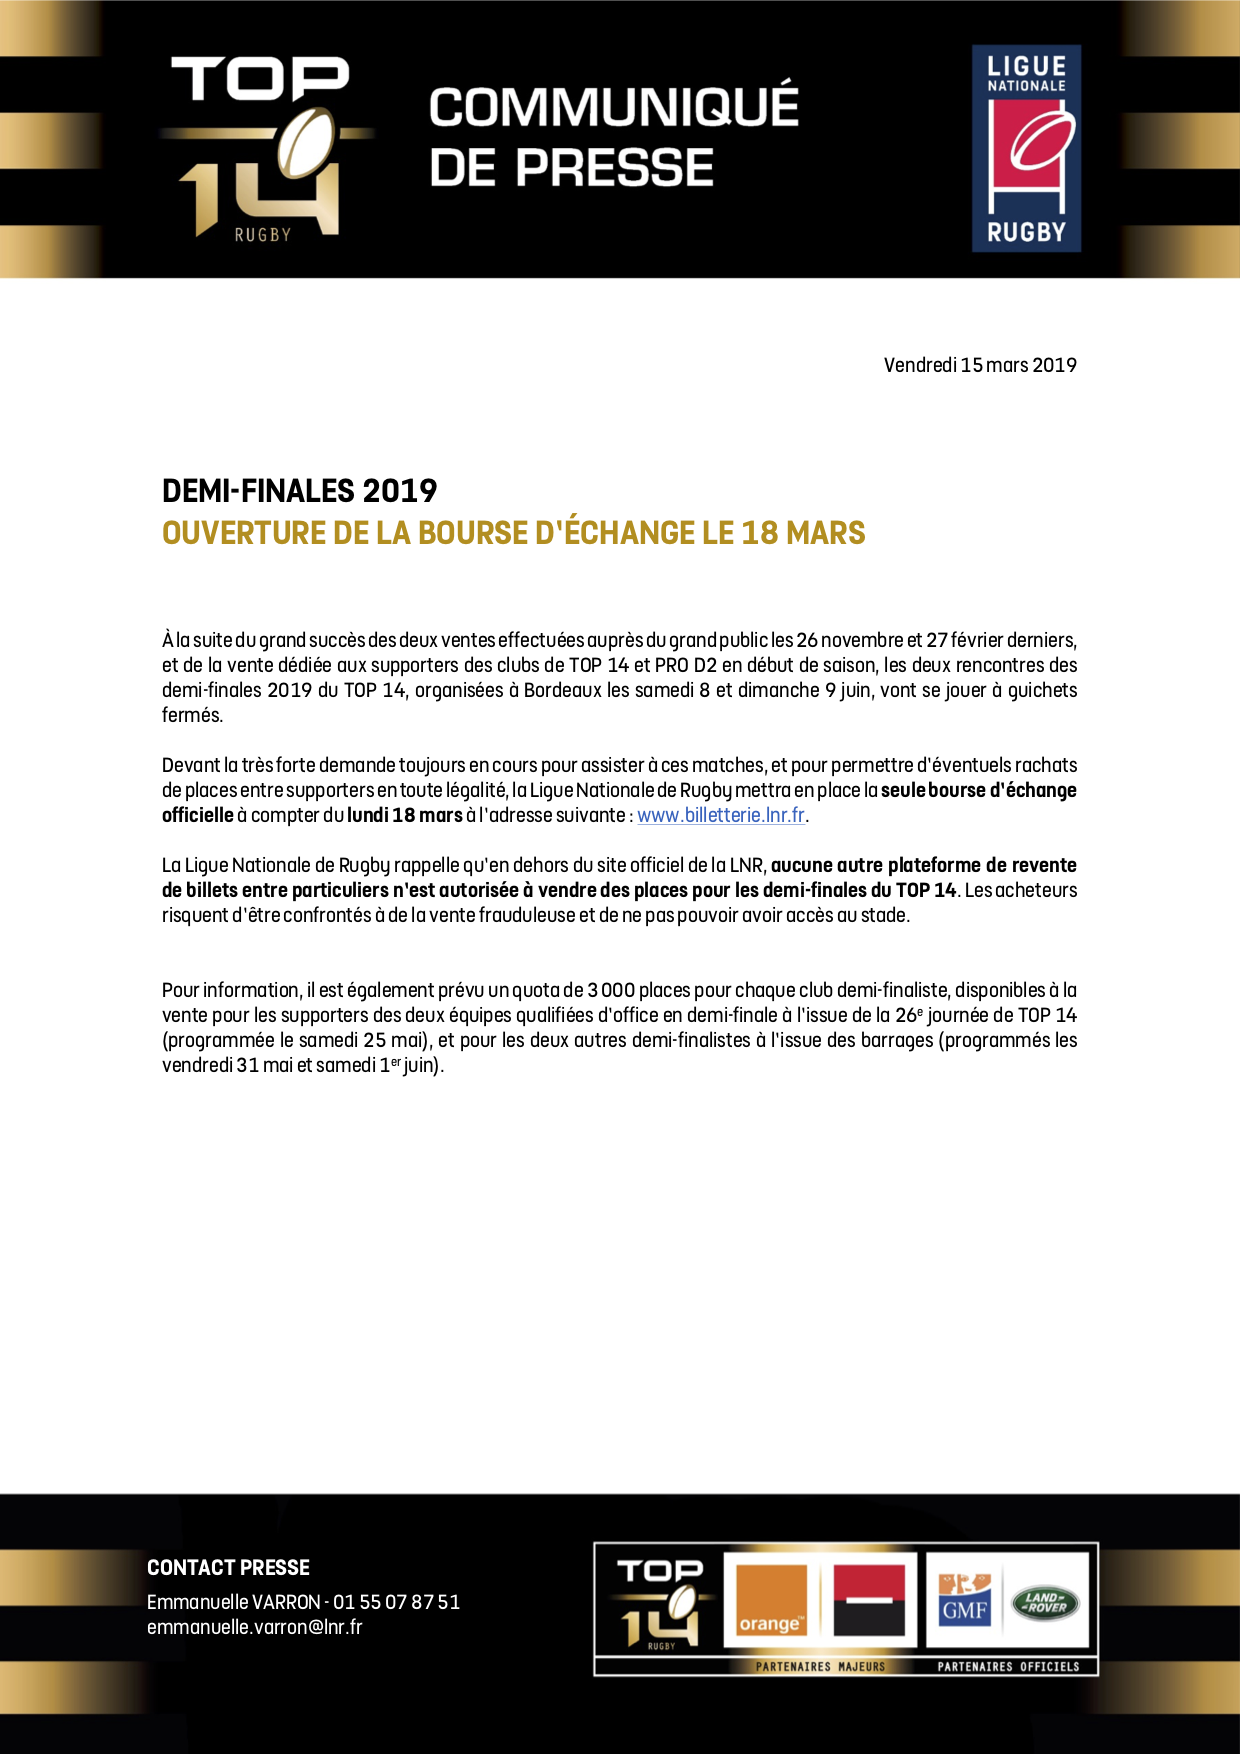 CP LNR - Demi-finales 2019 TOP 14 - Ouver ture de la bourse d'échange le 18 mars